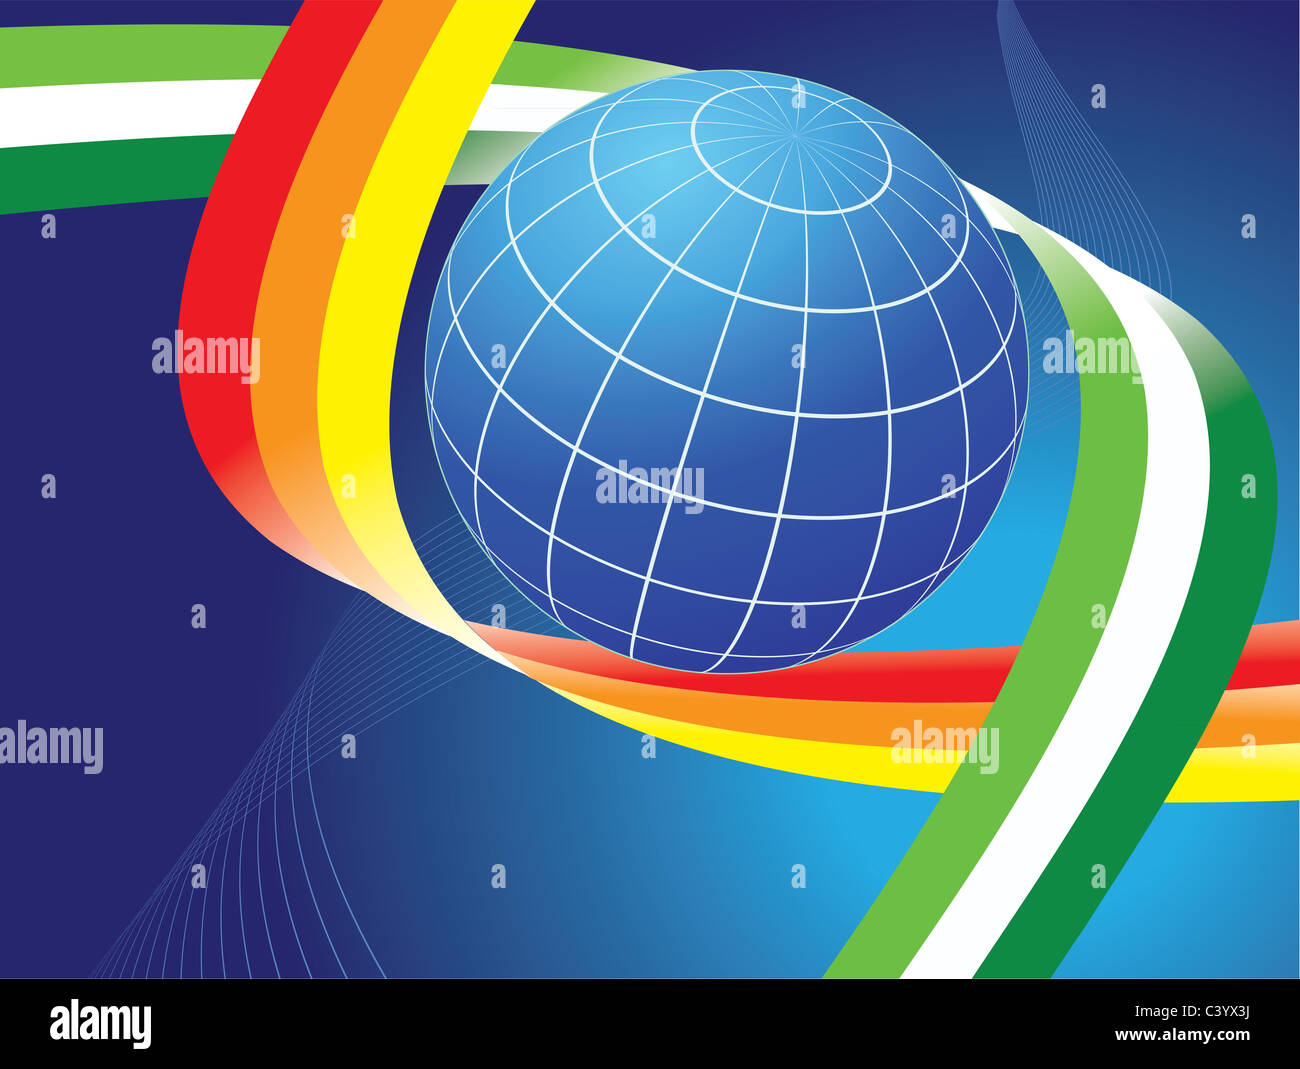 Globe de la terre et les courbes de couleurs arc-en-ciel sur fond bleu foncé Banque D'Images